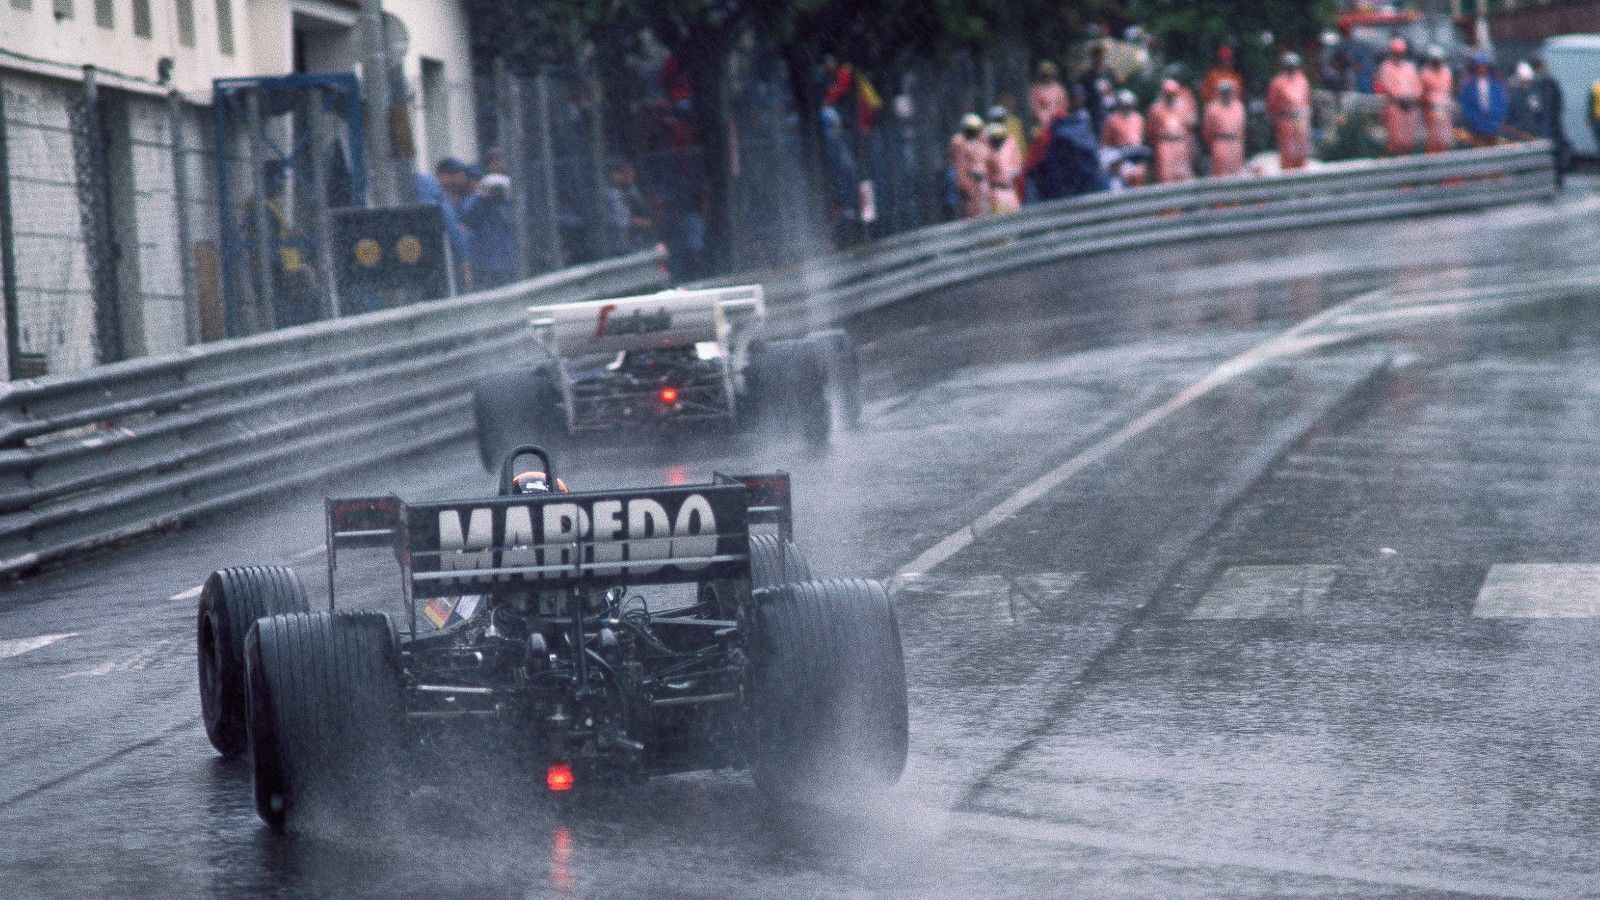 
                <strong>Monaco-GP 1984</strong><br>
                Bereits am Morgen hatte es im Fürstentum heftig geschüttet, mit 45 Minuten Verspätung wurde der GP aber trotzdem gestartet. Weil keine Besserung eintrat, wurde das Rennen nach gut einer Stunden in Runde 31 per roter Flagge abgebrochen. Rennleiter Jacky Ickx kassierte heftige Kritik, weil ihm vorgeworfen wurde, er hätte den Führenden Alain Prost vor den immer näher kommenden Ayrton Senna und Stefan Bellof (Foto) beschützen wollen. Bellof wurde Dritter, obwohl er als Letzter gestartet war. Das Podium wurde ihm später aberkannt, weil sein Team Tyrrell wegen zu leichter Autos disqualifiziert wurde.
              